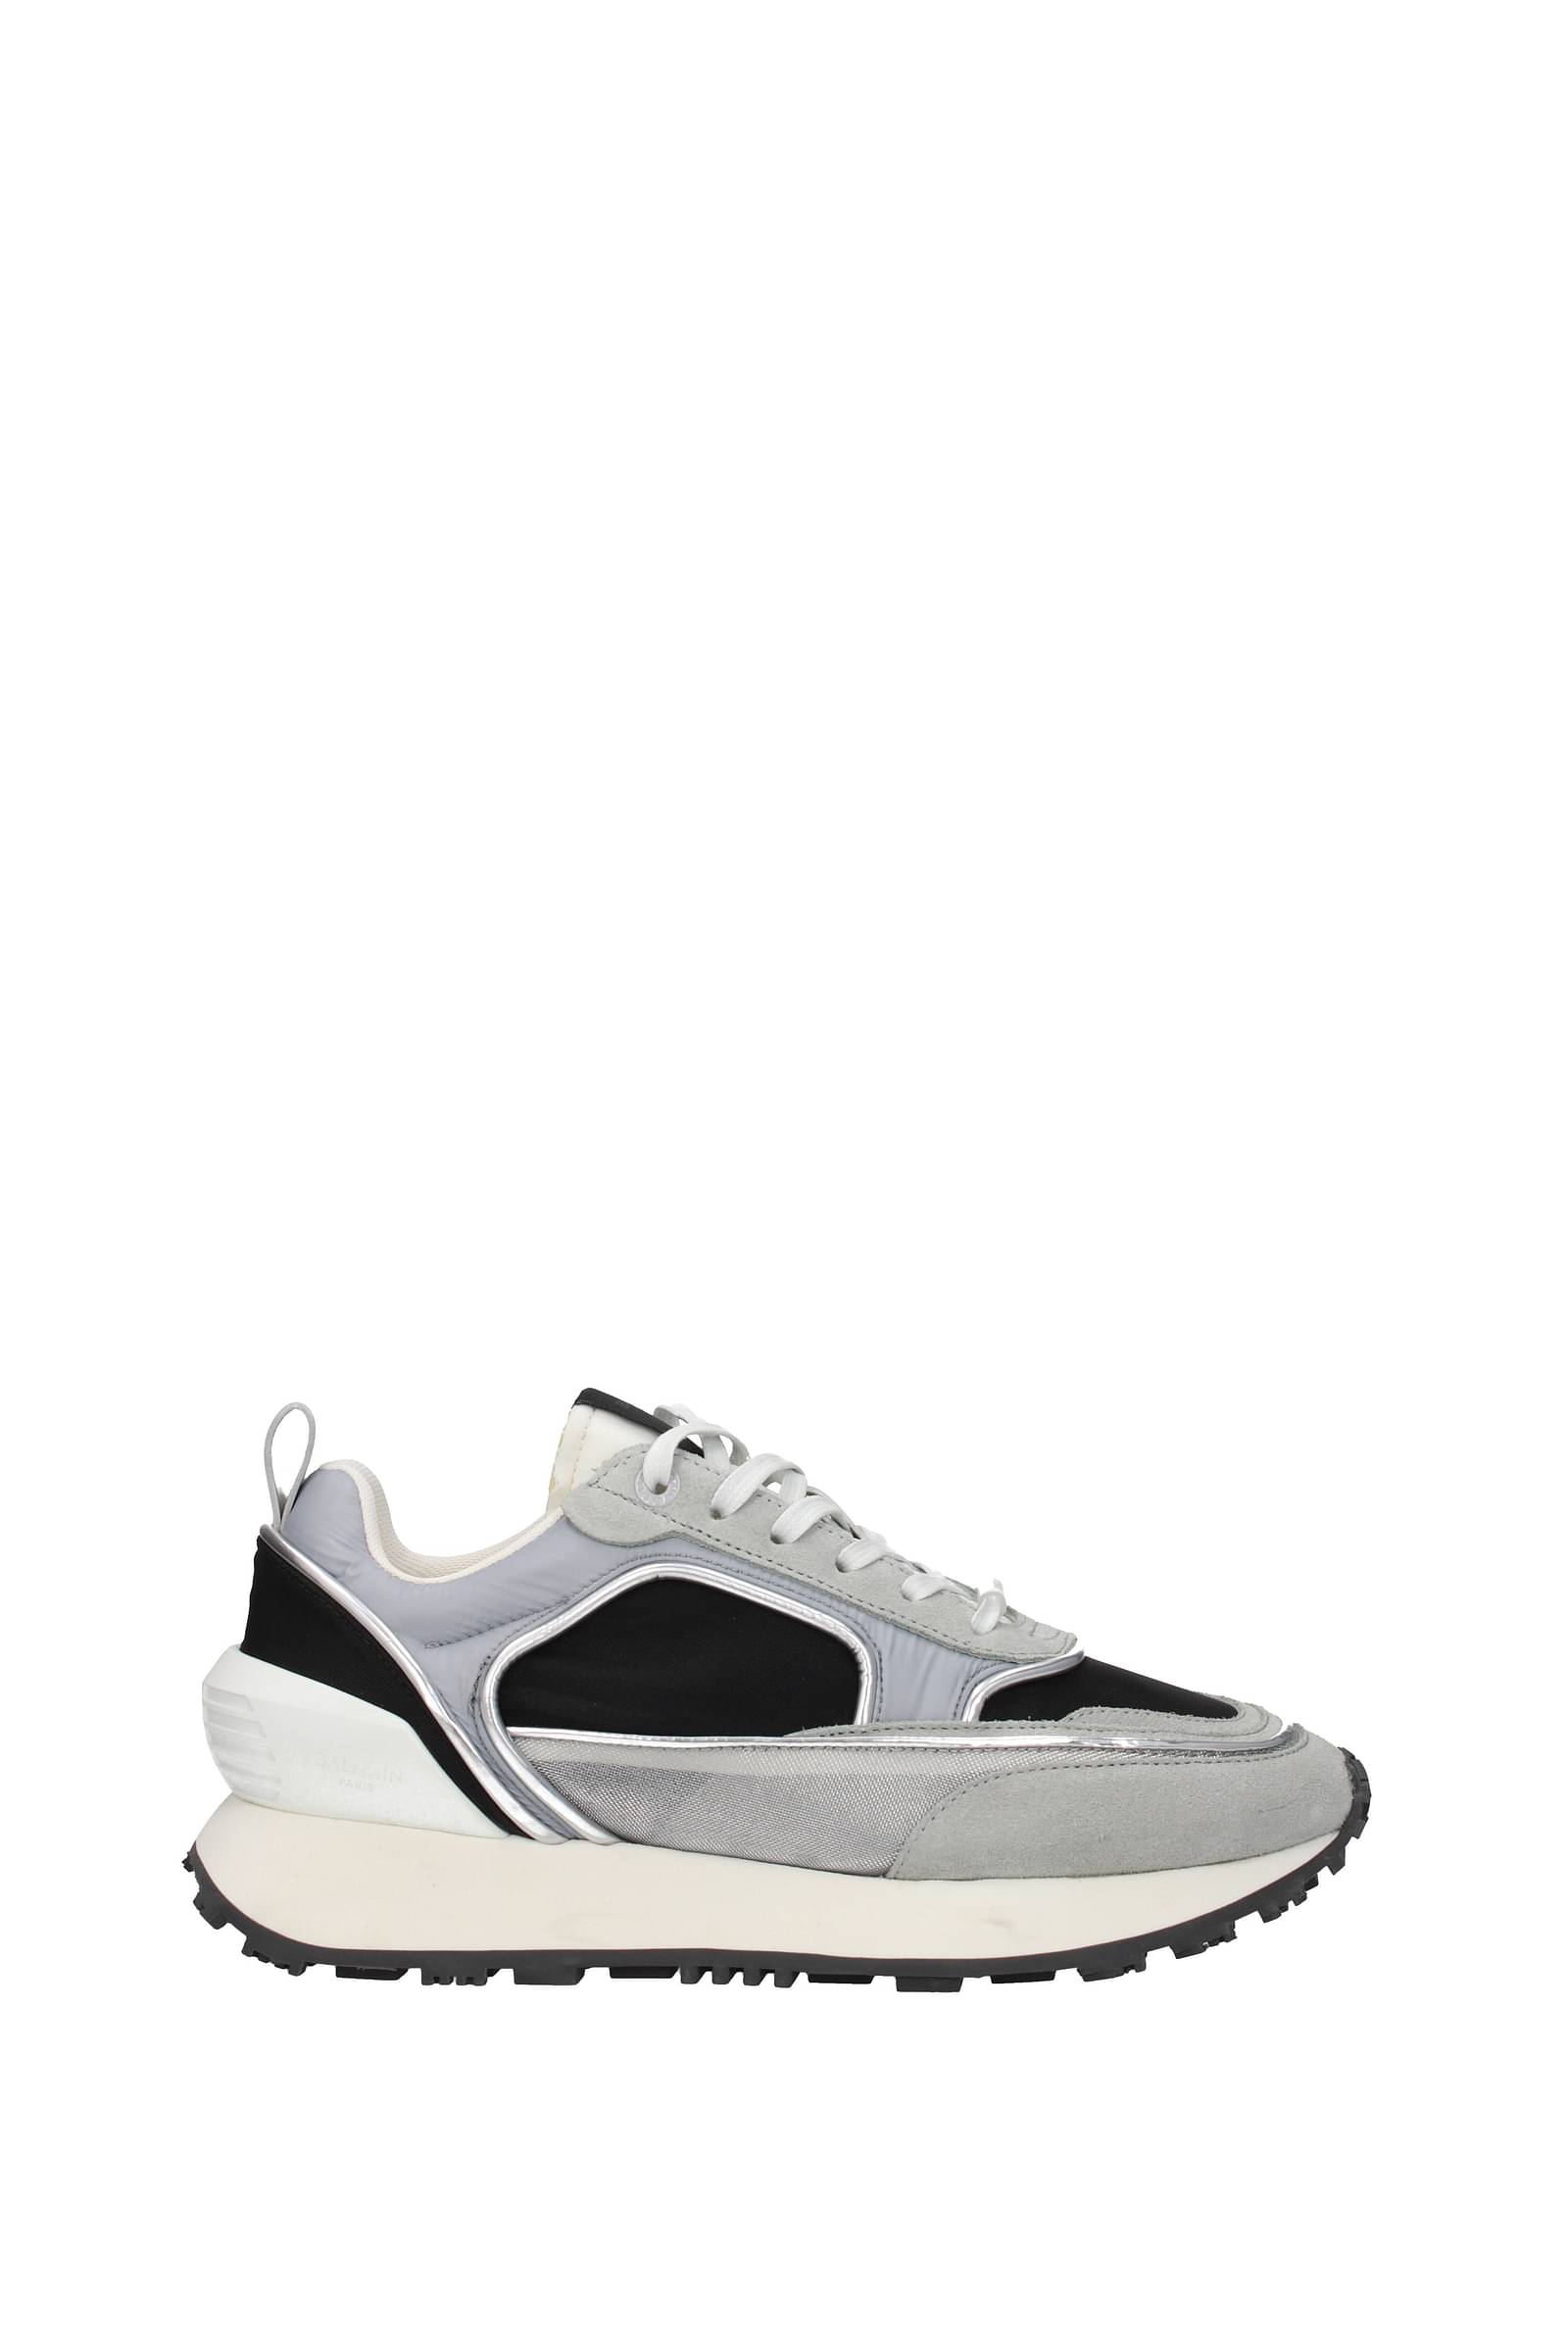 Buy U S Polo Assn Men Grey PU Sneakers - Casual Shoes for Men 16180670 |  Myntra